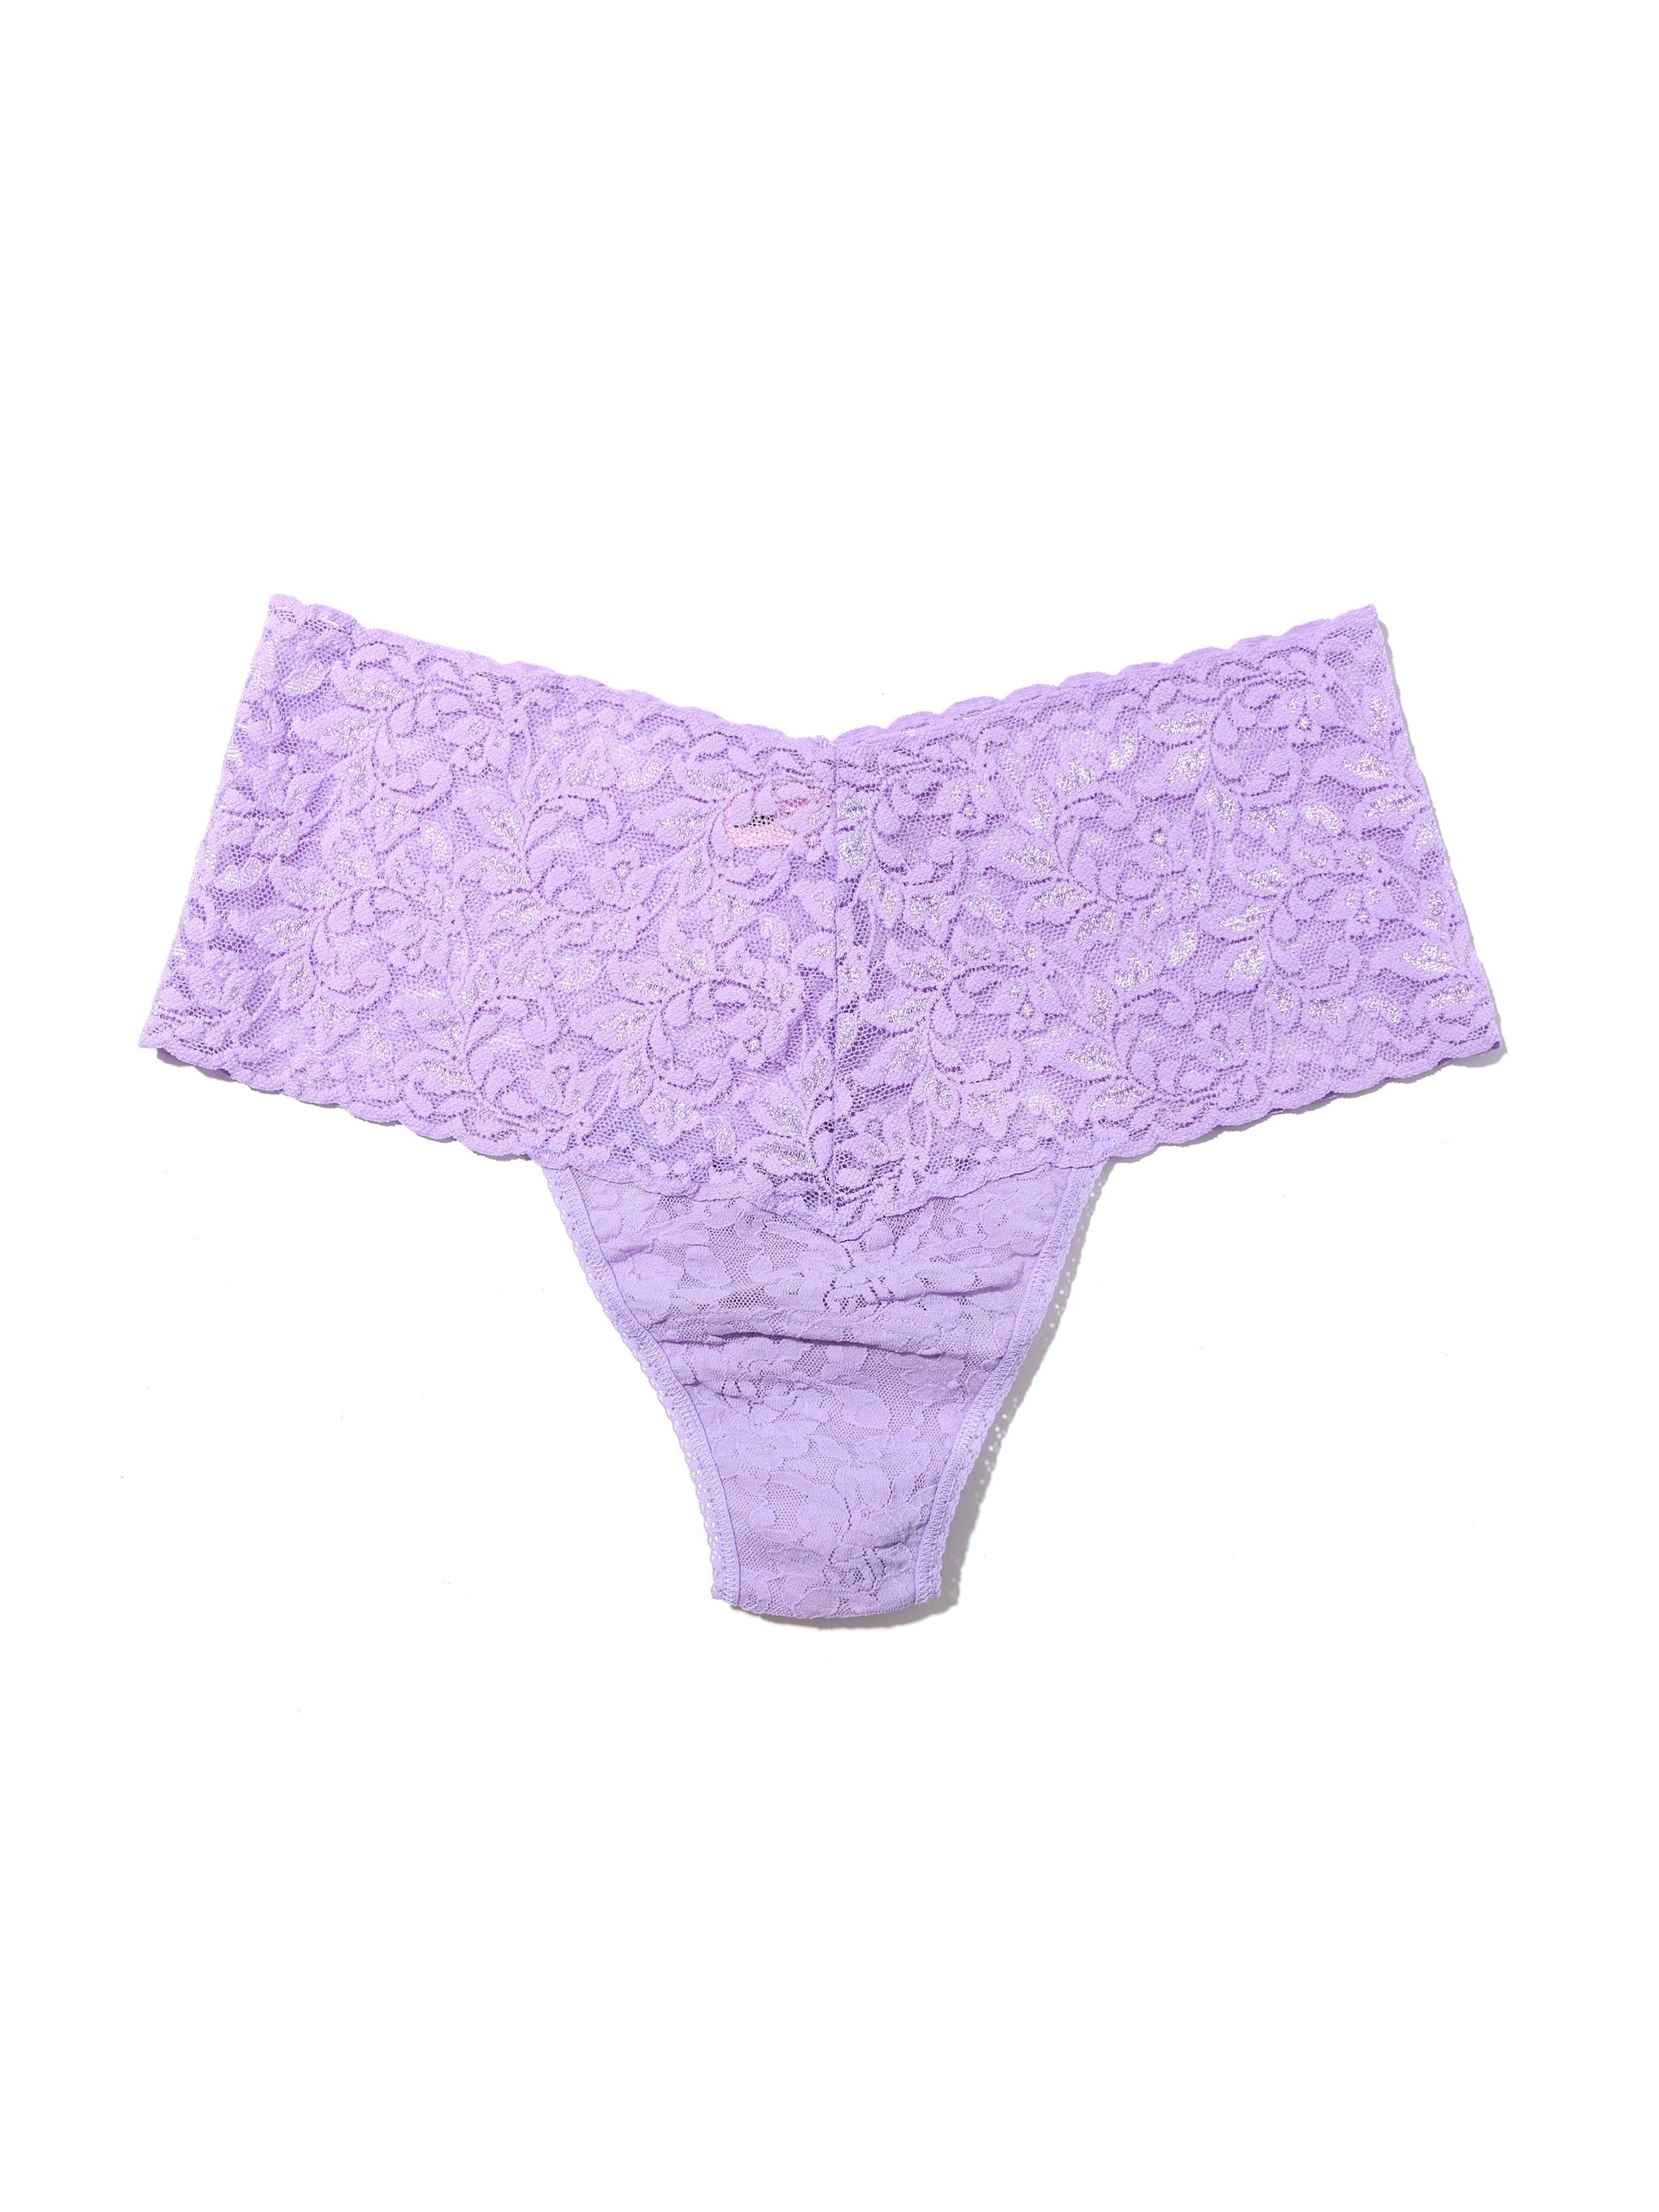 Retro Lace Thong Wisteria Purple